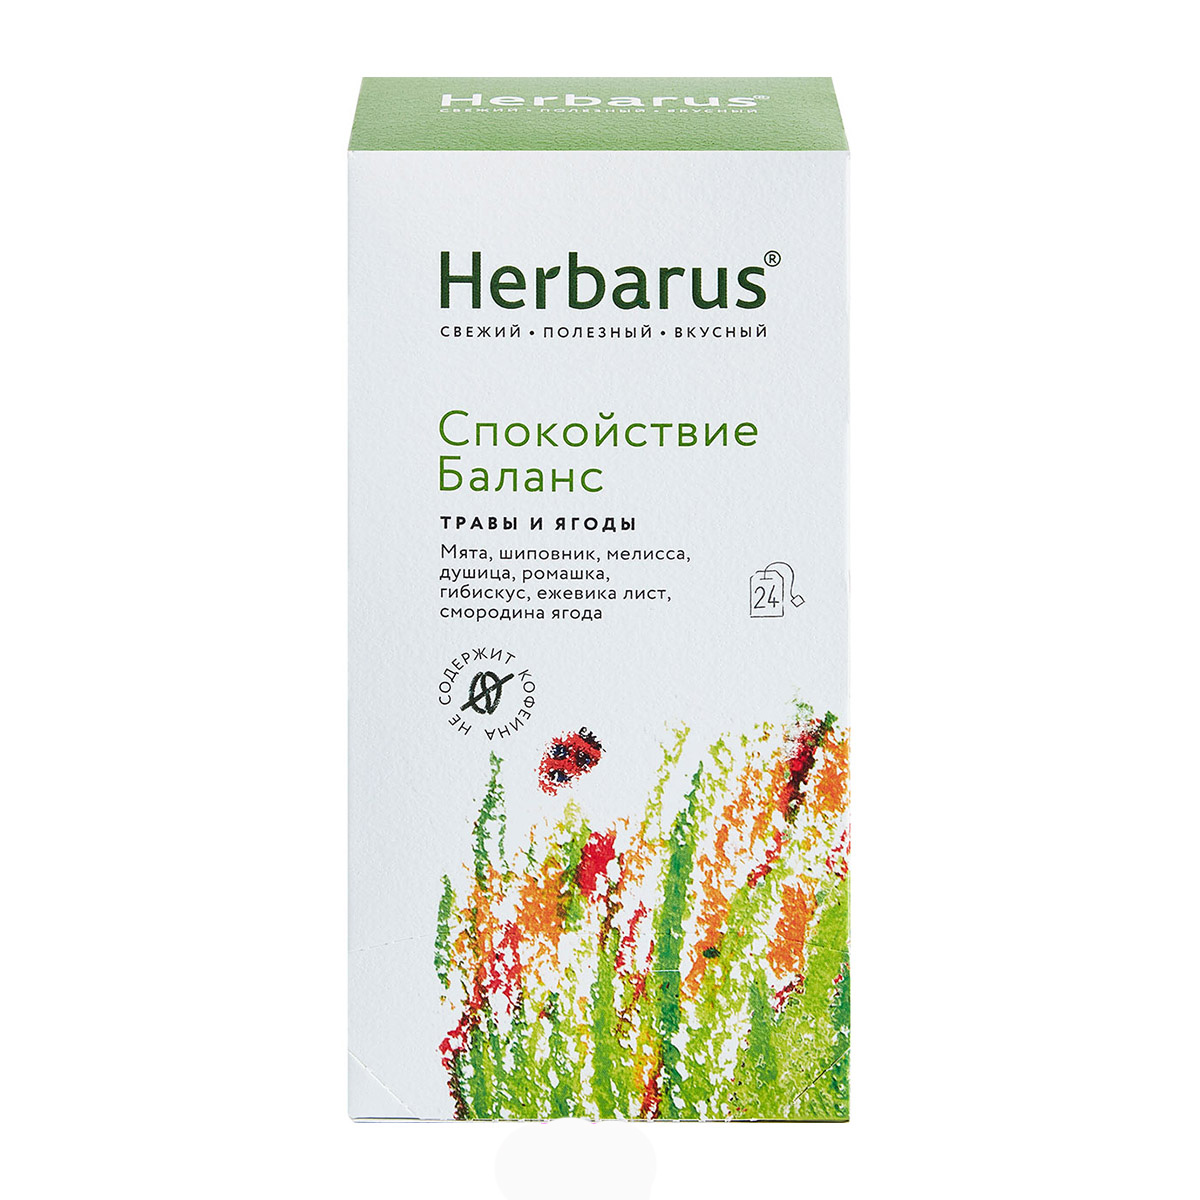 Herbarus Чайный напиток Спокойствие и баланс, 24 шт х 1,8 г (Herbarus, Травы и ягоды)